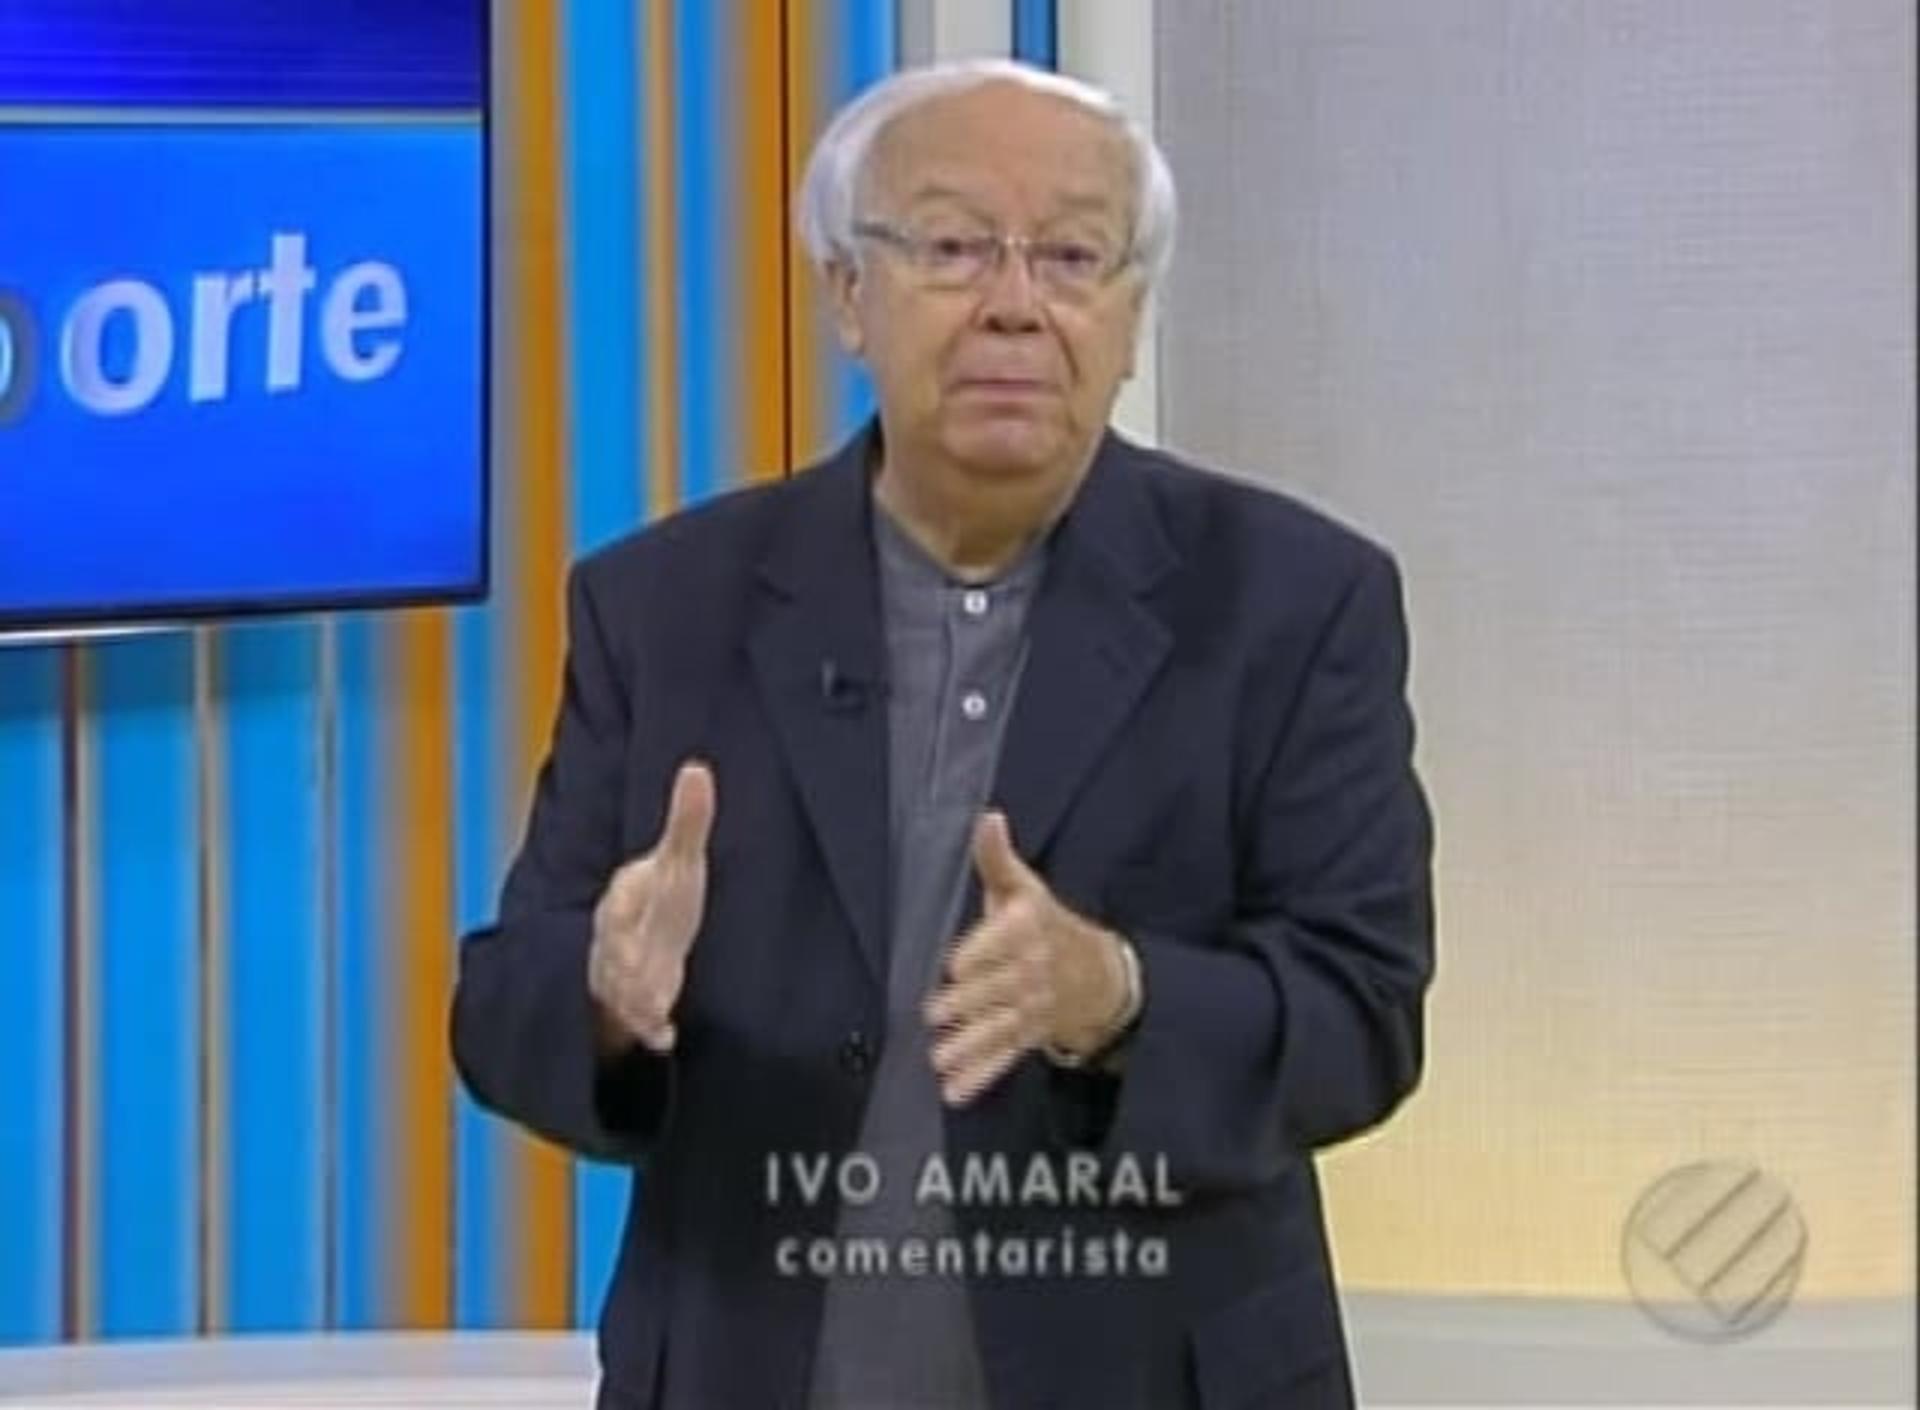 Ivo Amaral